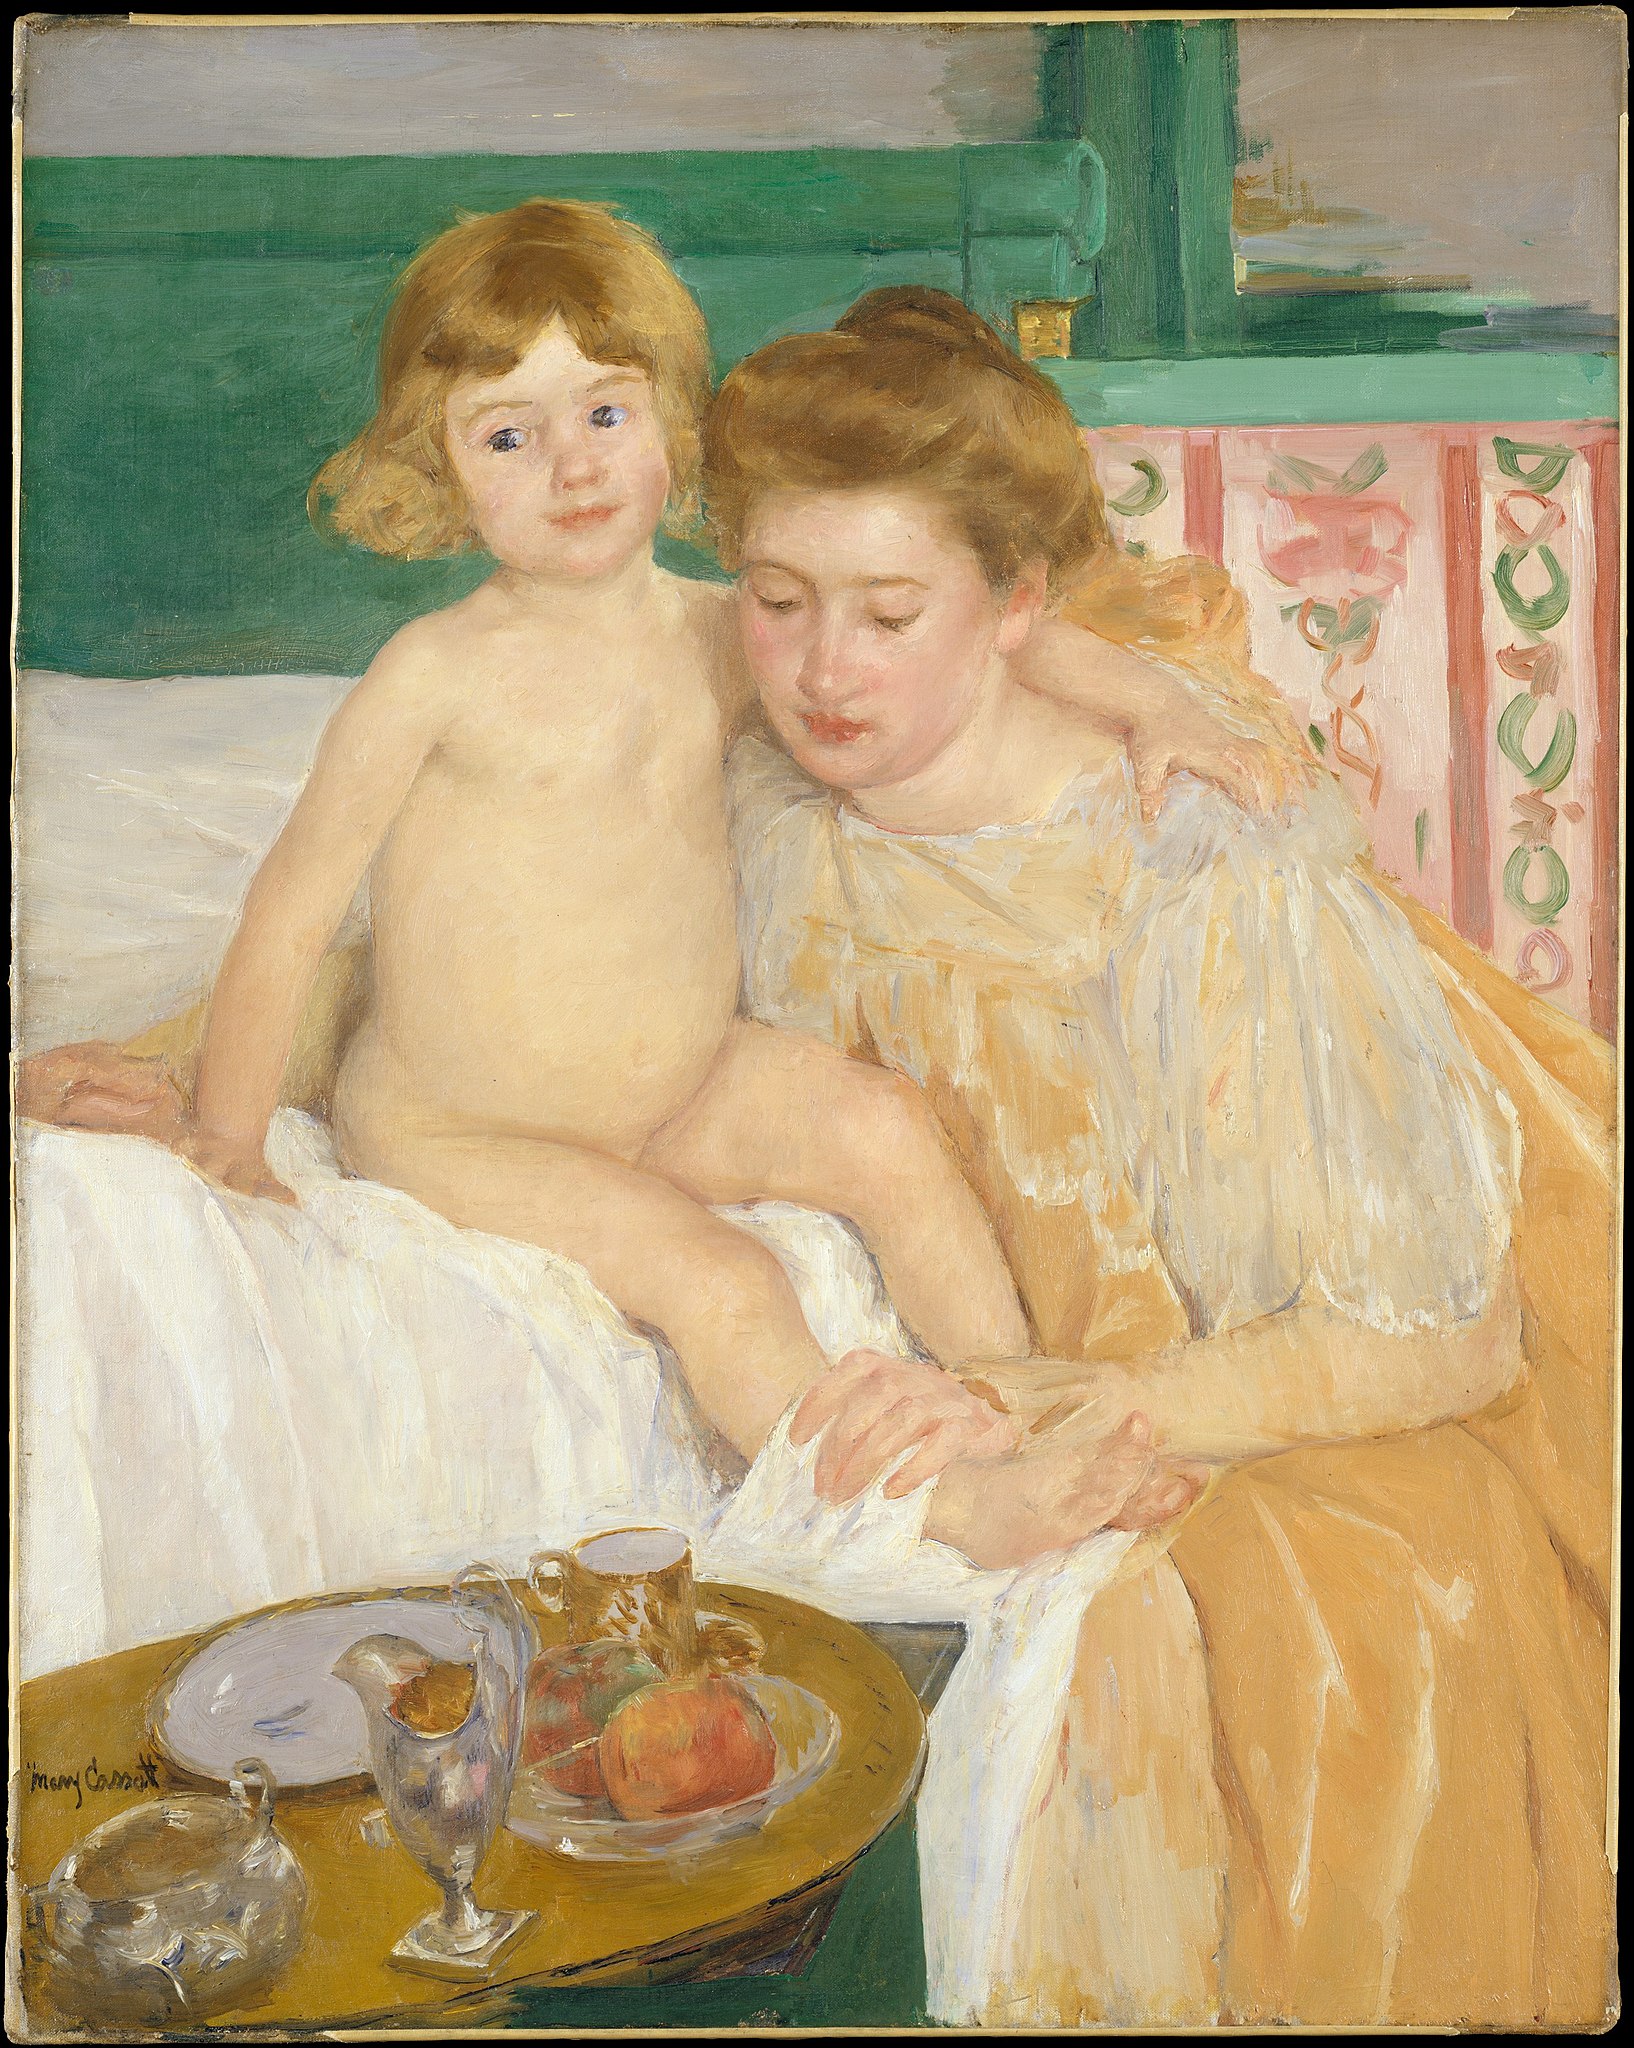 엄마와 아이 (낮잠에서 깨어난 아이) by Mary Cassatt - 1899년경 - 92.7 x 73.7 cm 